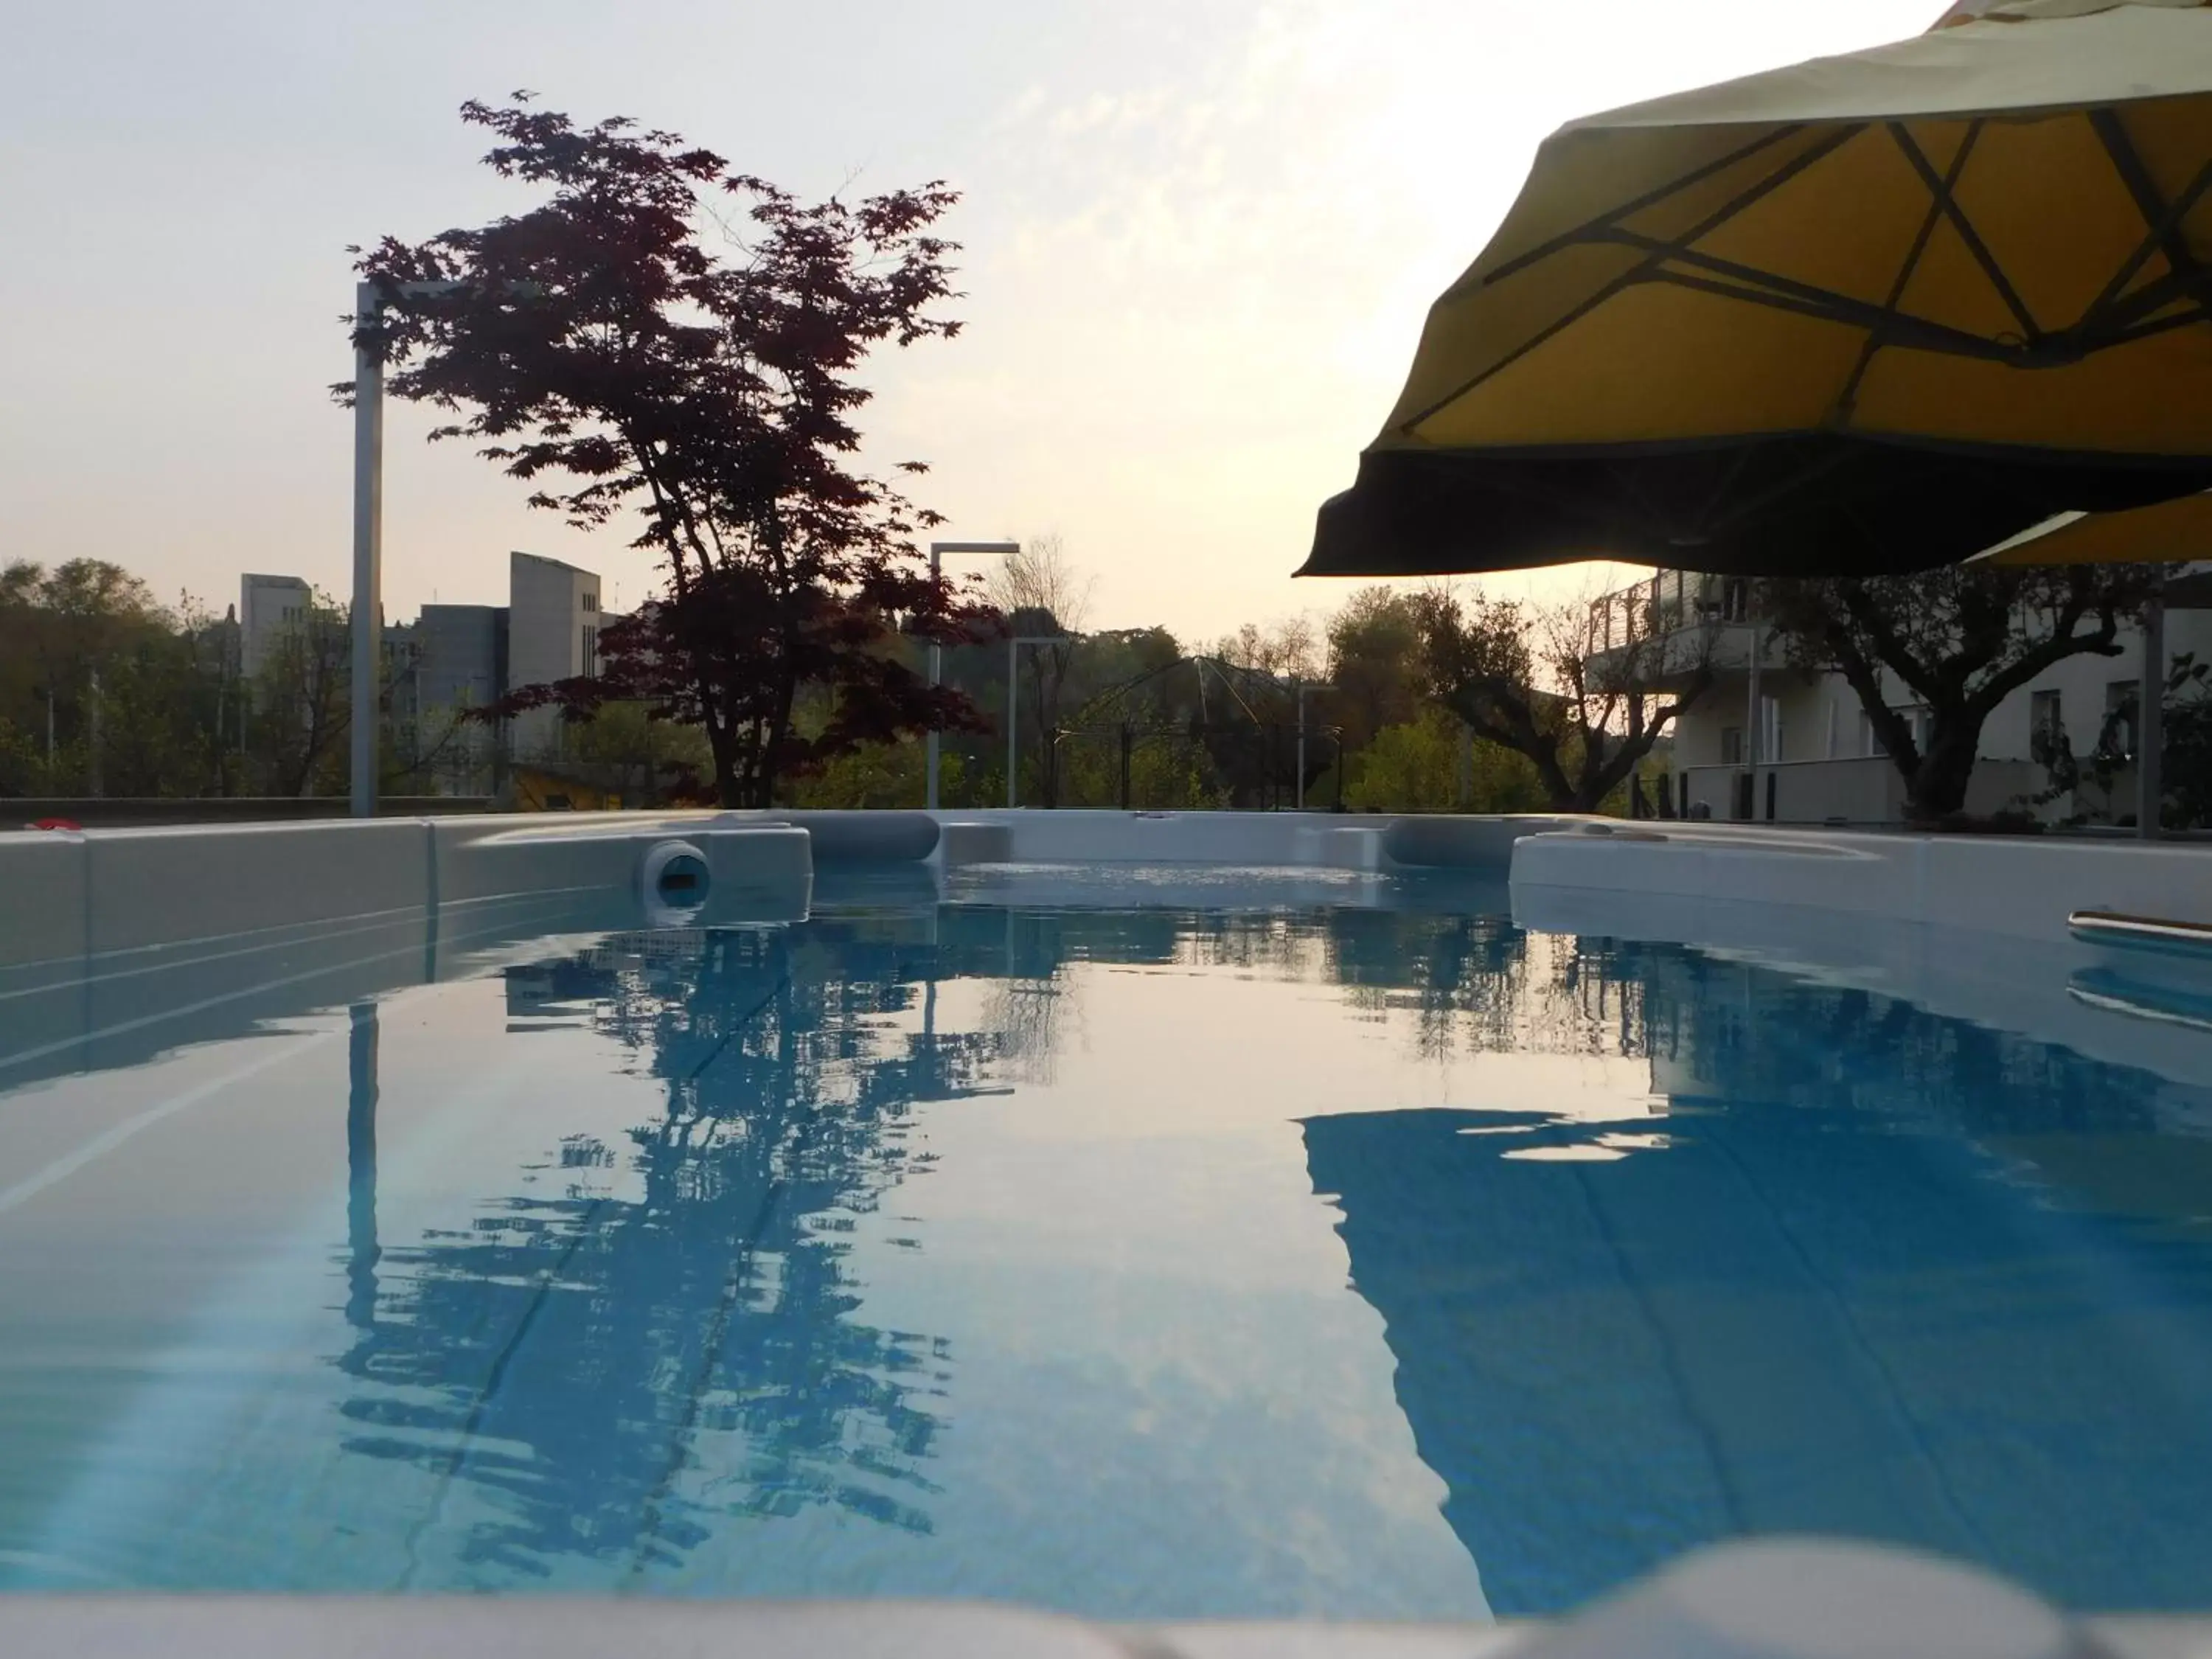 Swimming Pool in Palace Hotel "La CONCHIGLIA D' ORO"